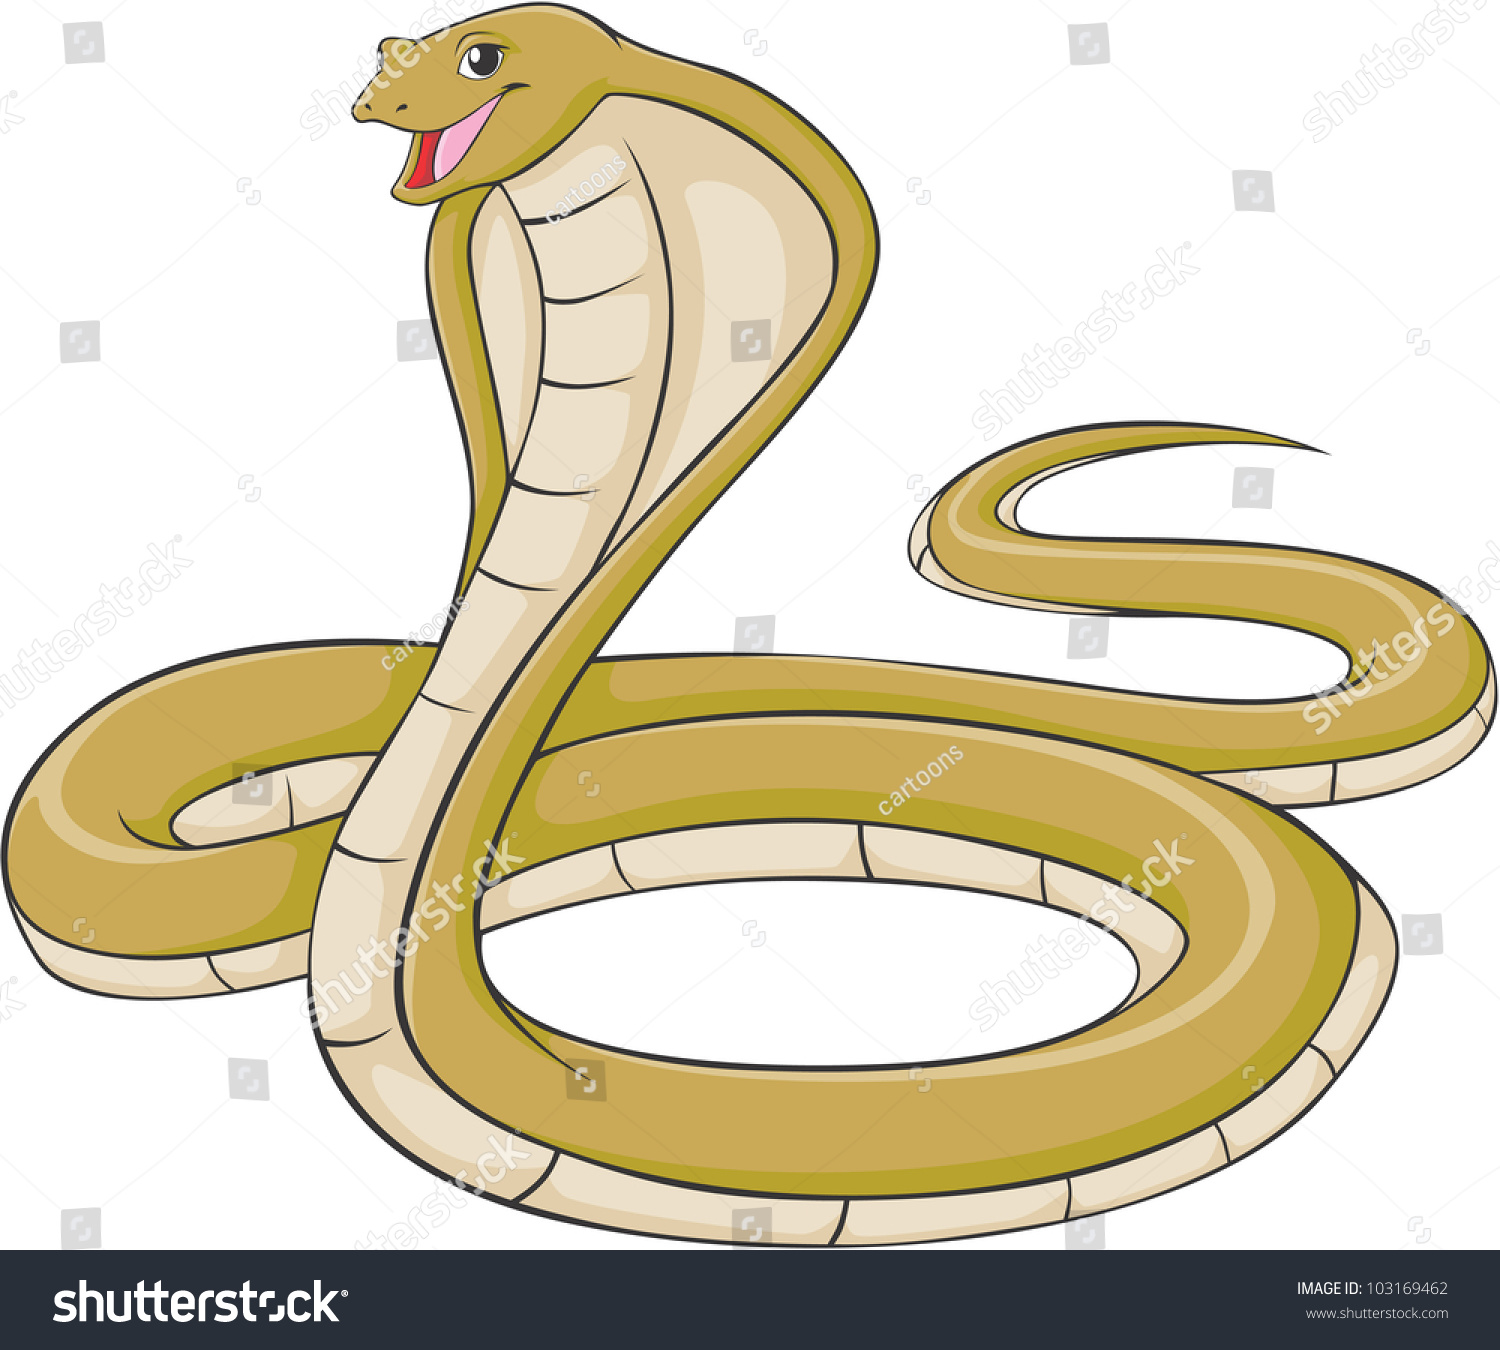 Happy king cobra cartoon stock vector shutterstock